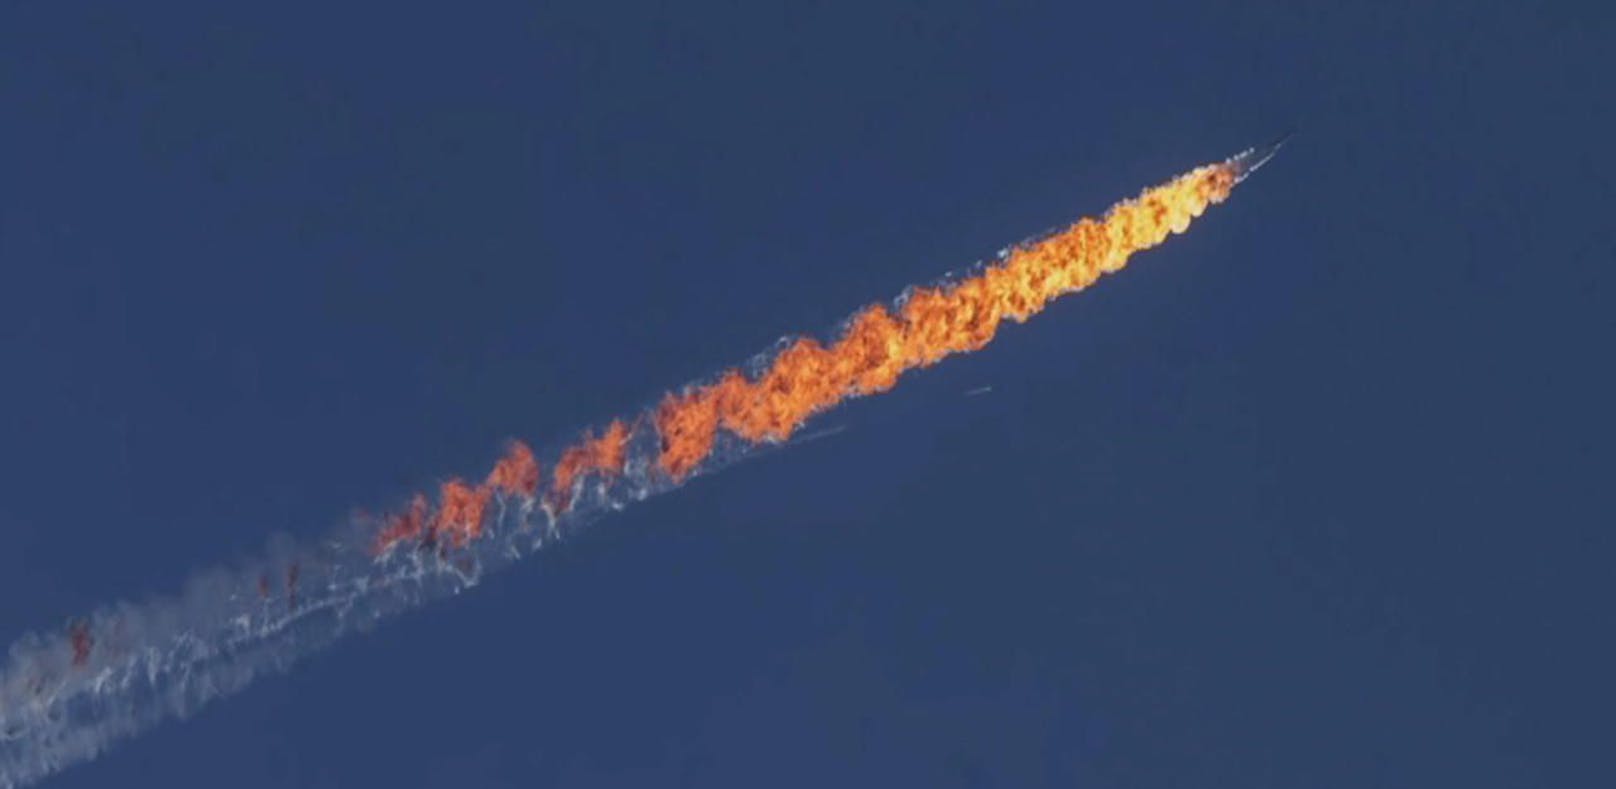 Am 24. November 2015 wurde ein russischer Kampfjet des Typs Sukhoi Su-24 vom türkischen Militär im türkisch-syrischen Grenzgebiet abgeschossen. Archivbild